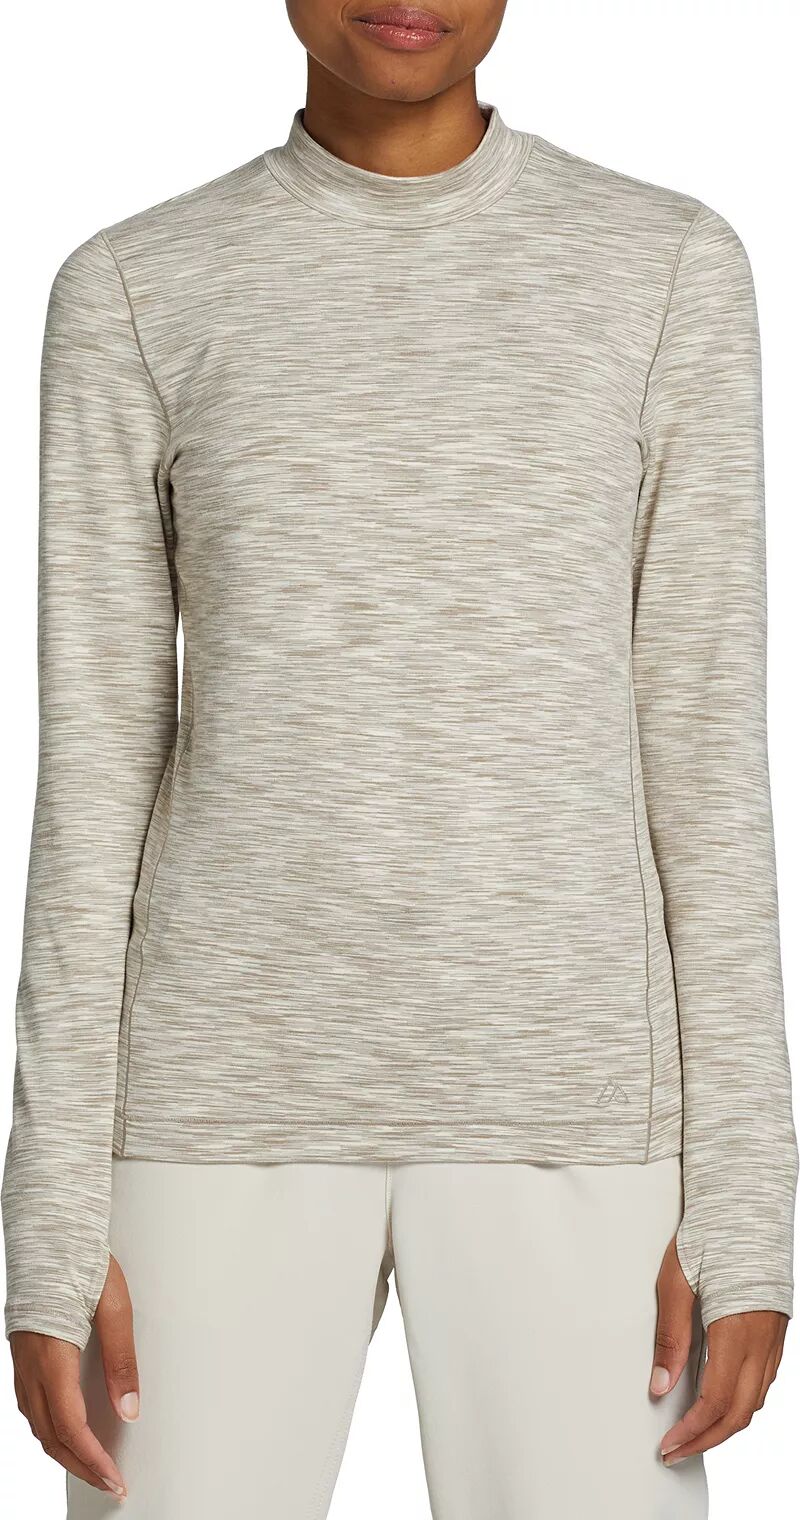 Женская рубашка полевой вязки Alpine Design с воротником-стойкой